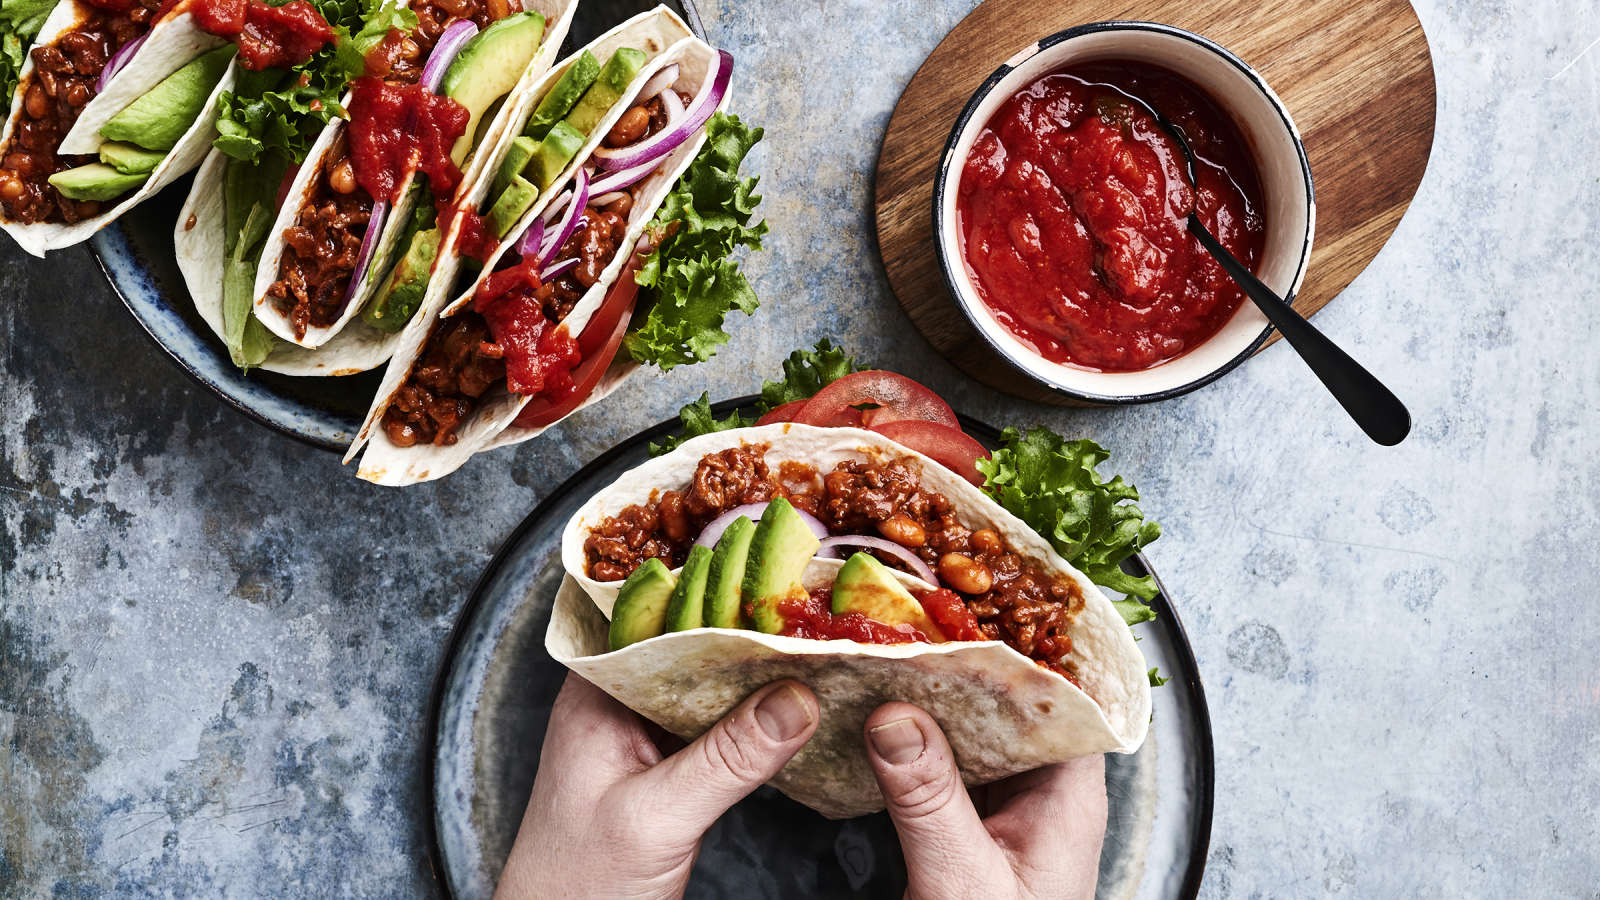 Kädet, jotka pitelevät jauheliha-papuseoksella ja kasviksilla täytettyä tortillaa. Vieressä kulho, jossa salsaa sekä valmiiksi täytettyjä tortilloja.